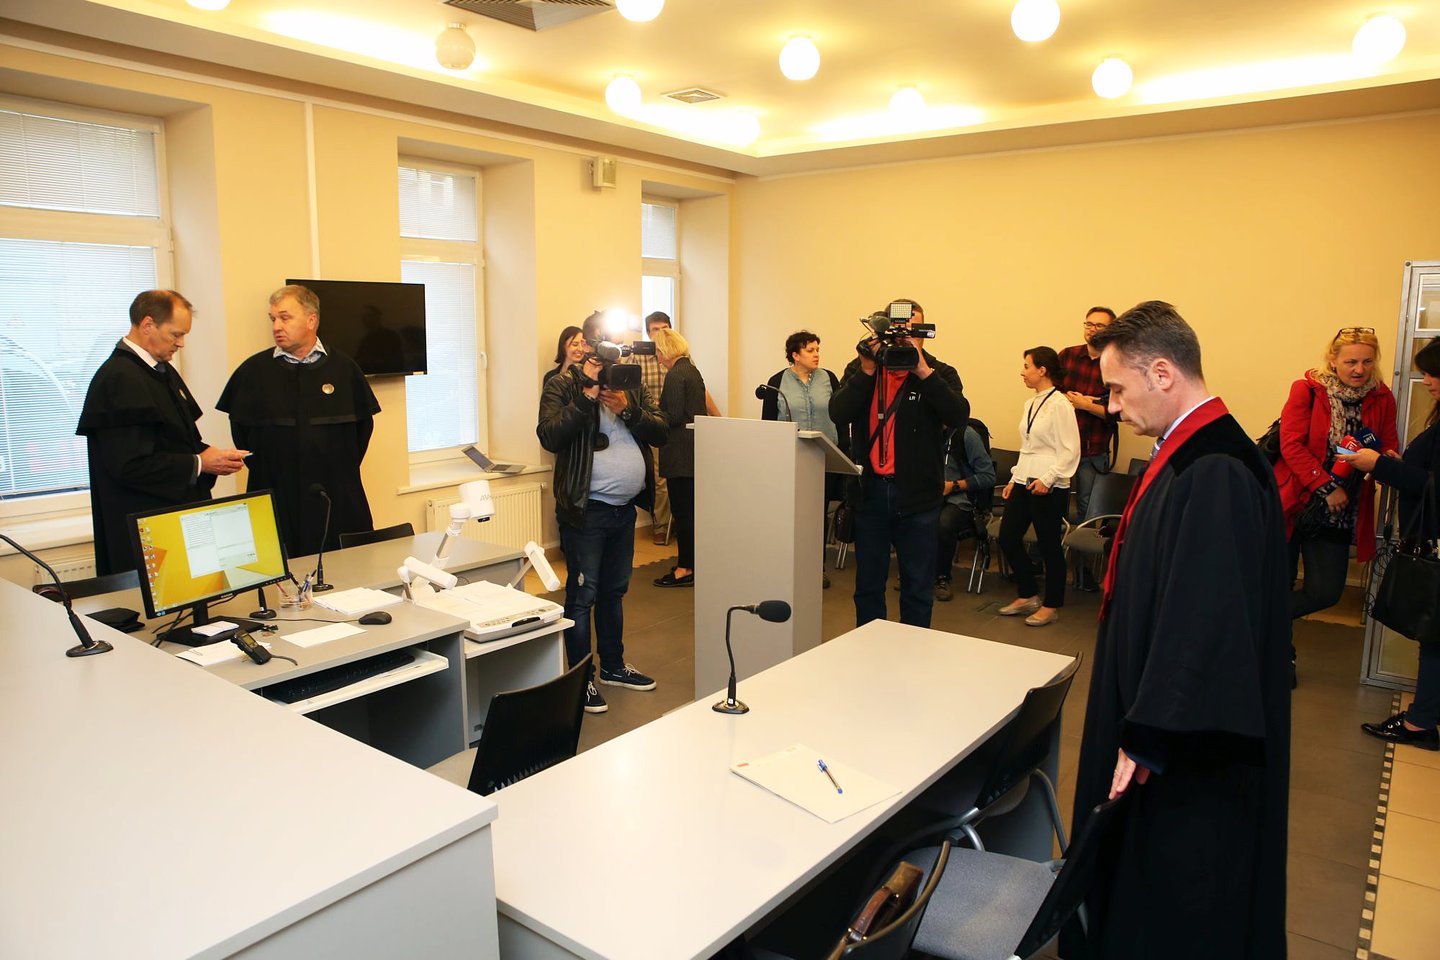  Kauno apylinkės teismas trečiadienį paskelbė nuosprendį D.Gineikaitės girtumo slėpimo byloje.<br> M.Patašiaus nuotr.